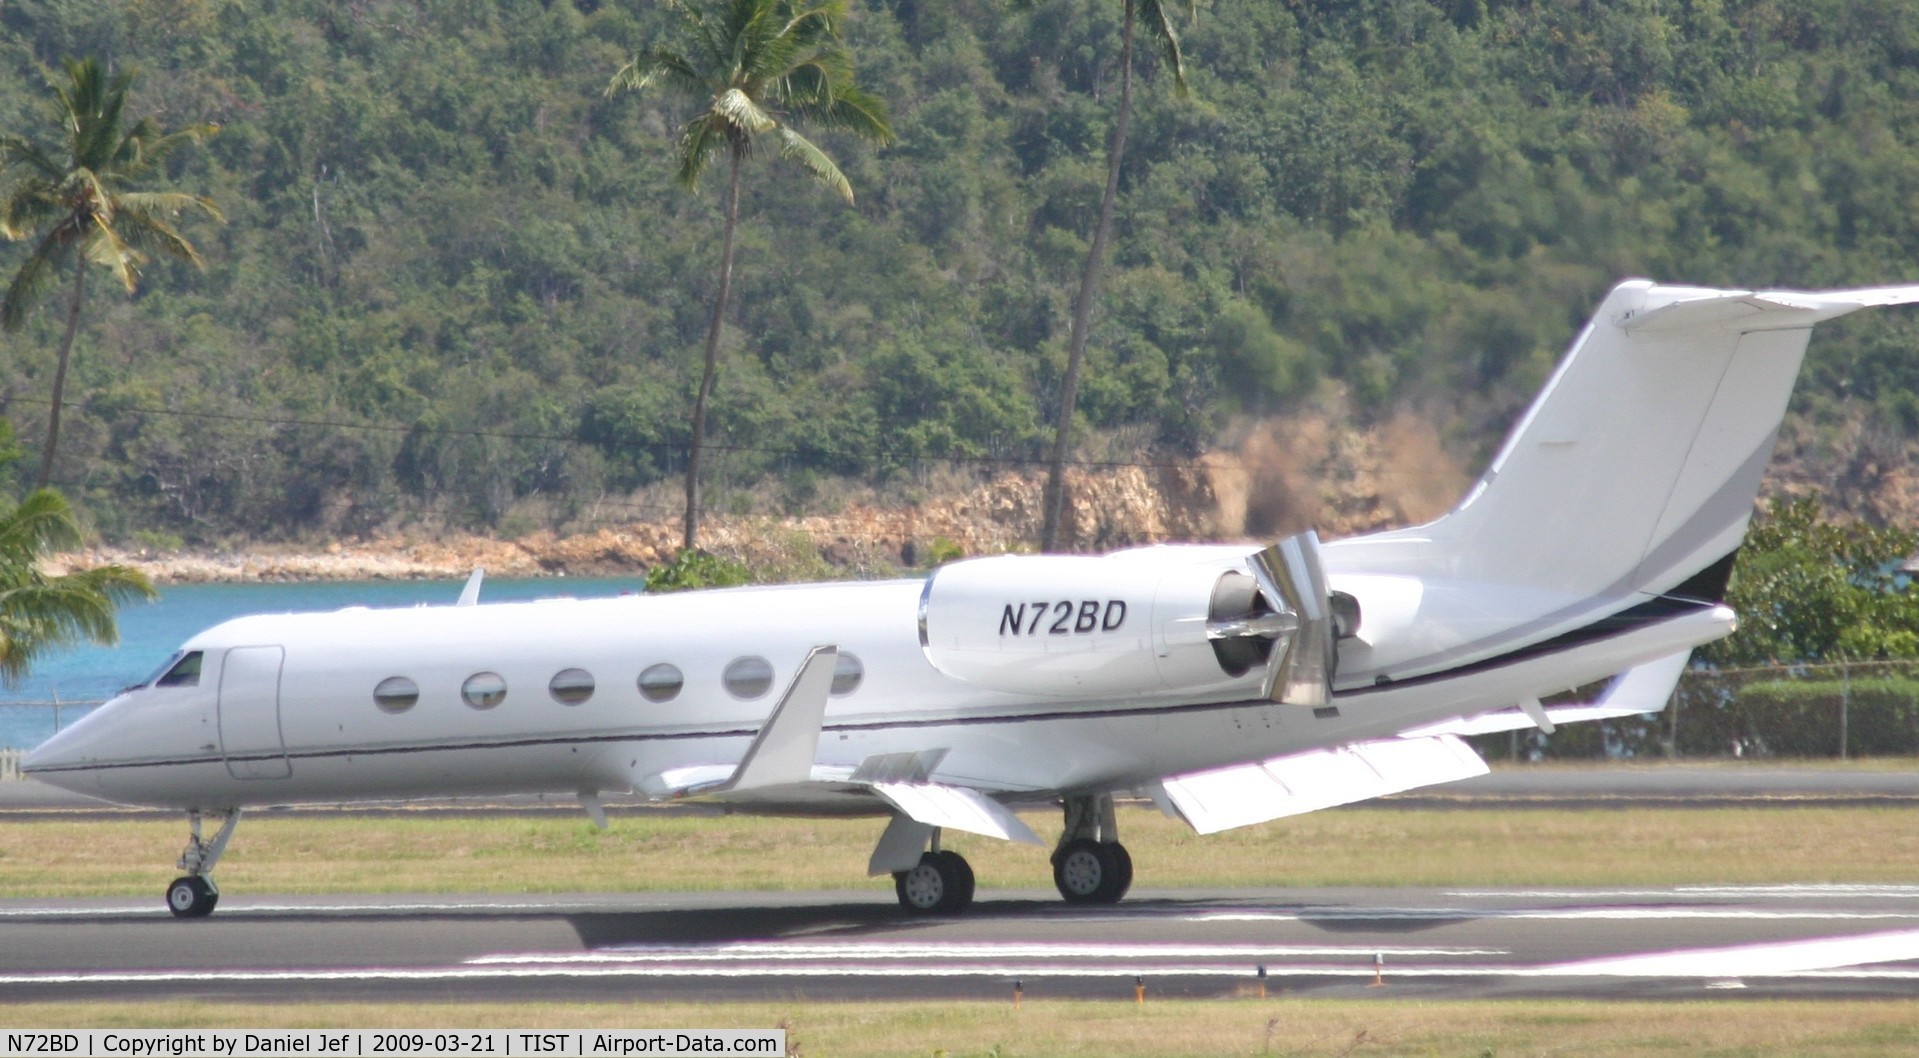 N72BD, 2000 Gulfstream Aerospace G-IV C/N 1420, Rolling out at Tist